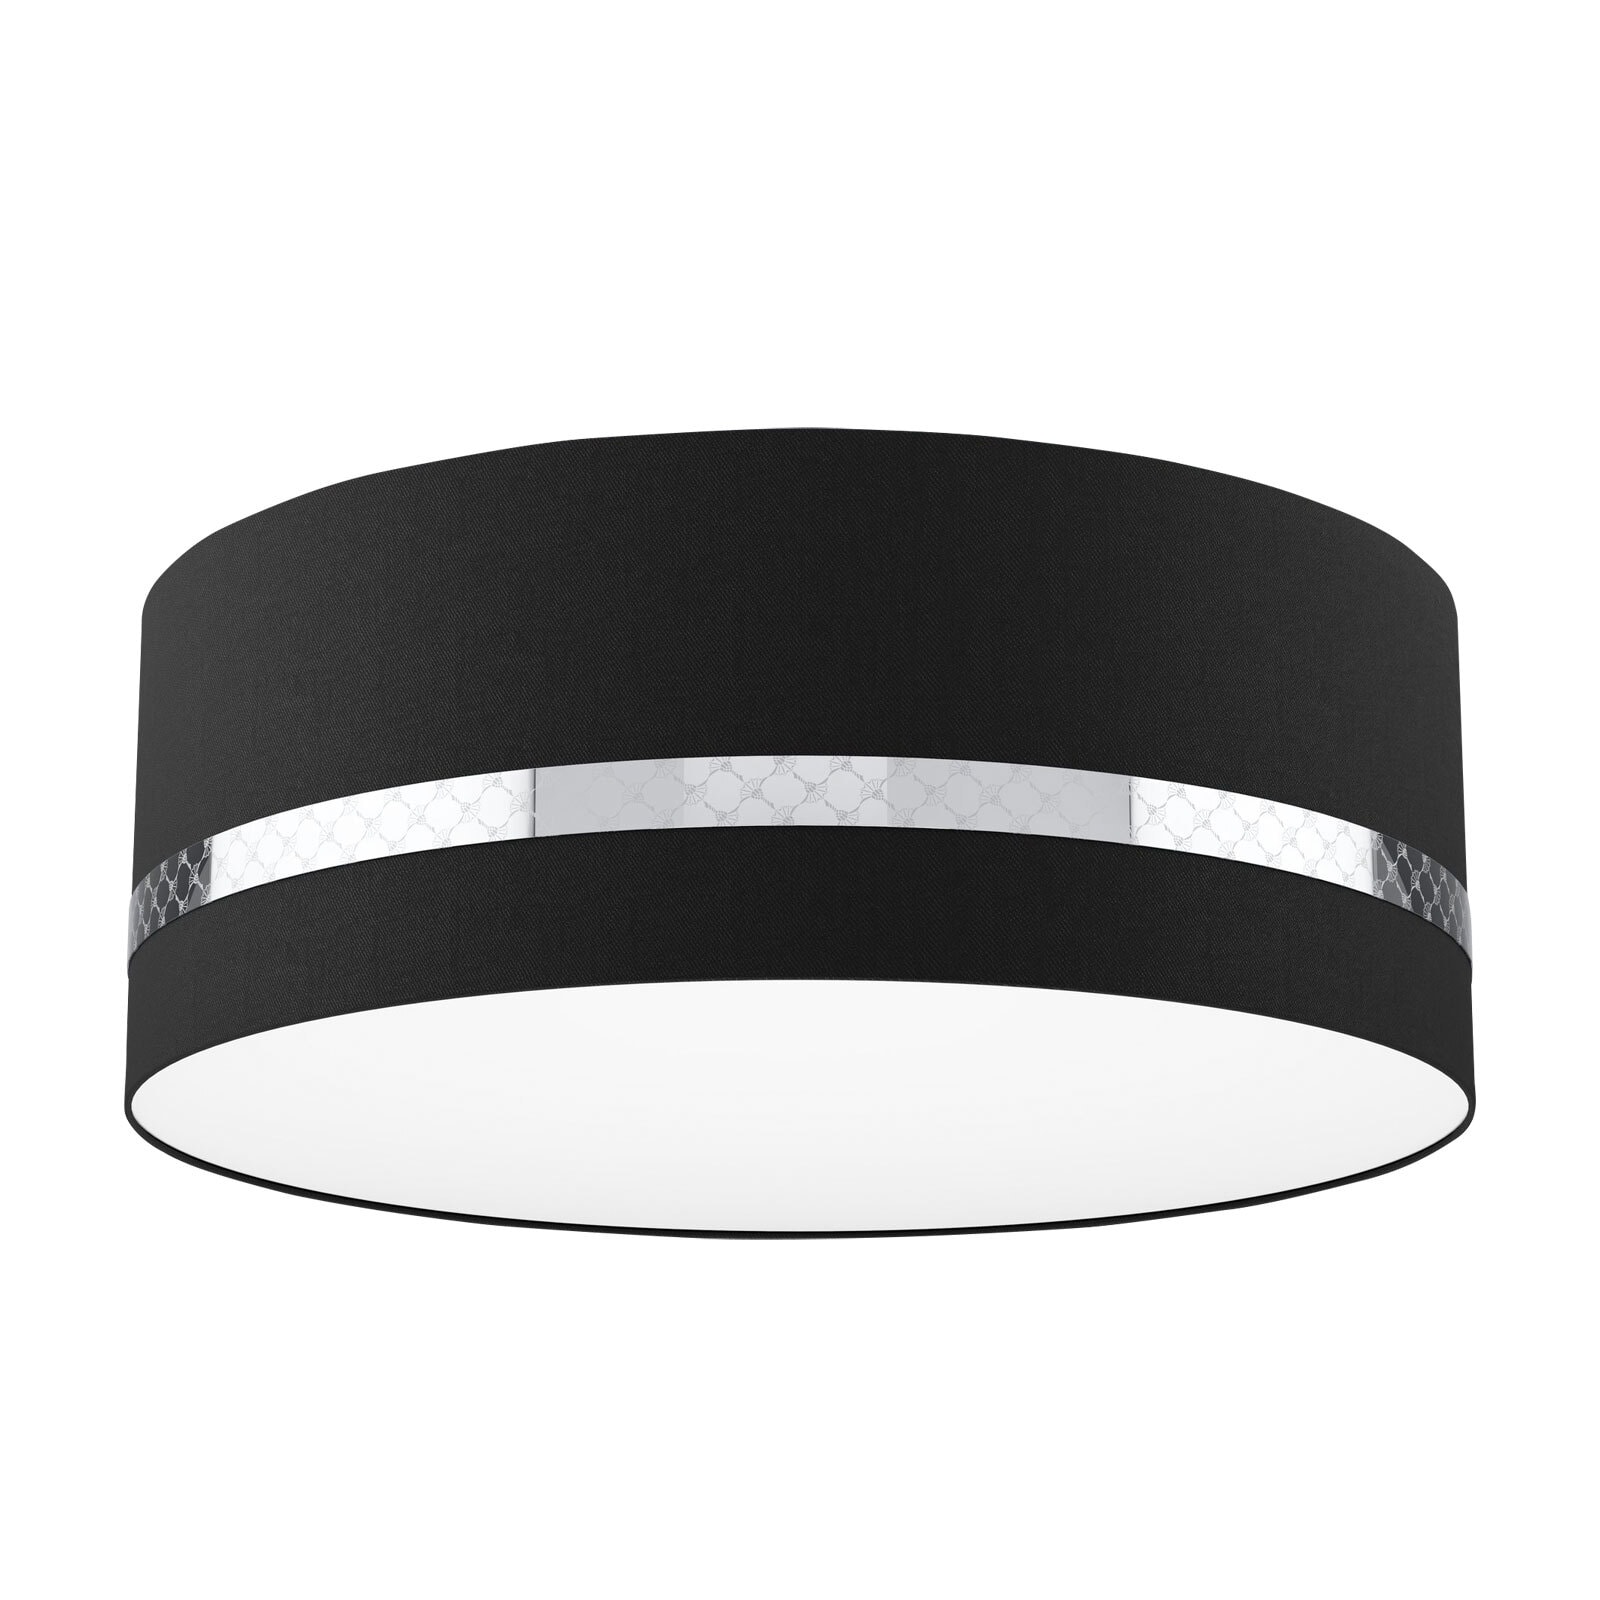 JOOP! Retrofit Deckenlampe ROUND-LIGHTS BLACK 53 cm schwarz /chromfarbig